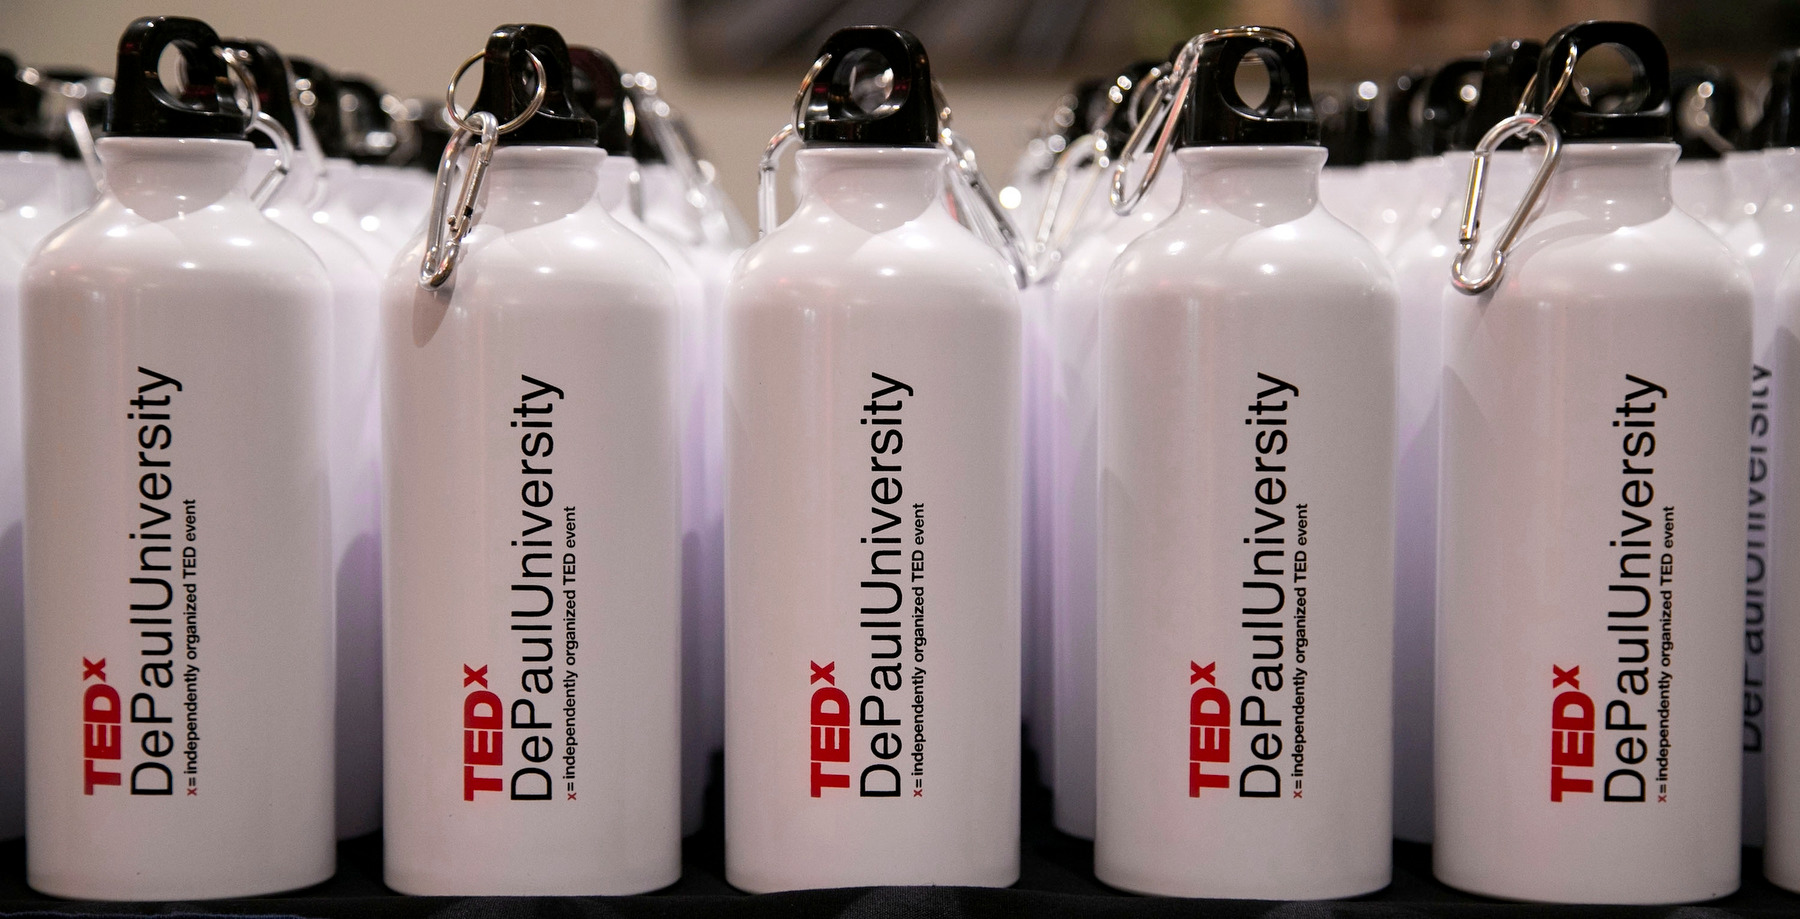 2018 TEDxDePaulUniversity